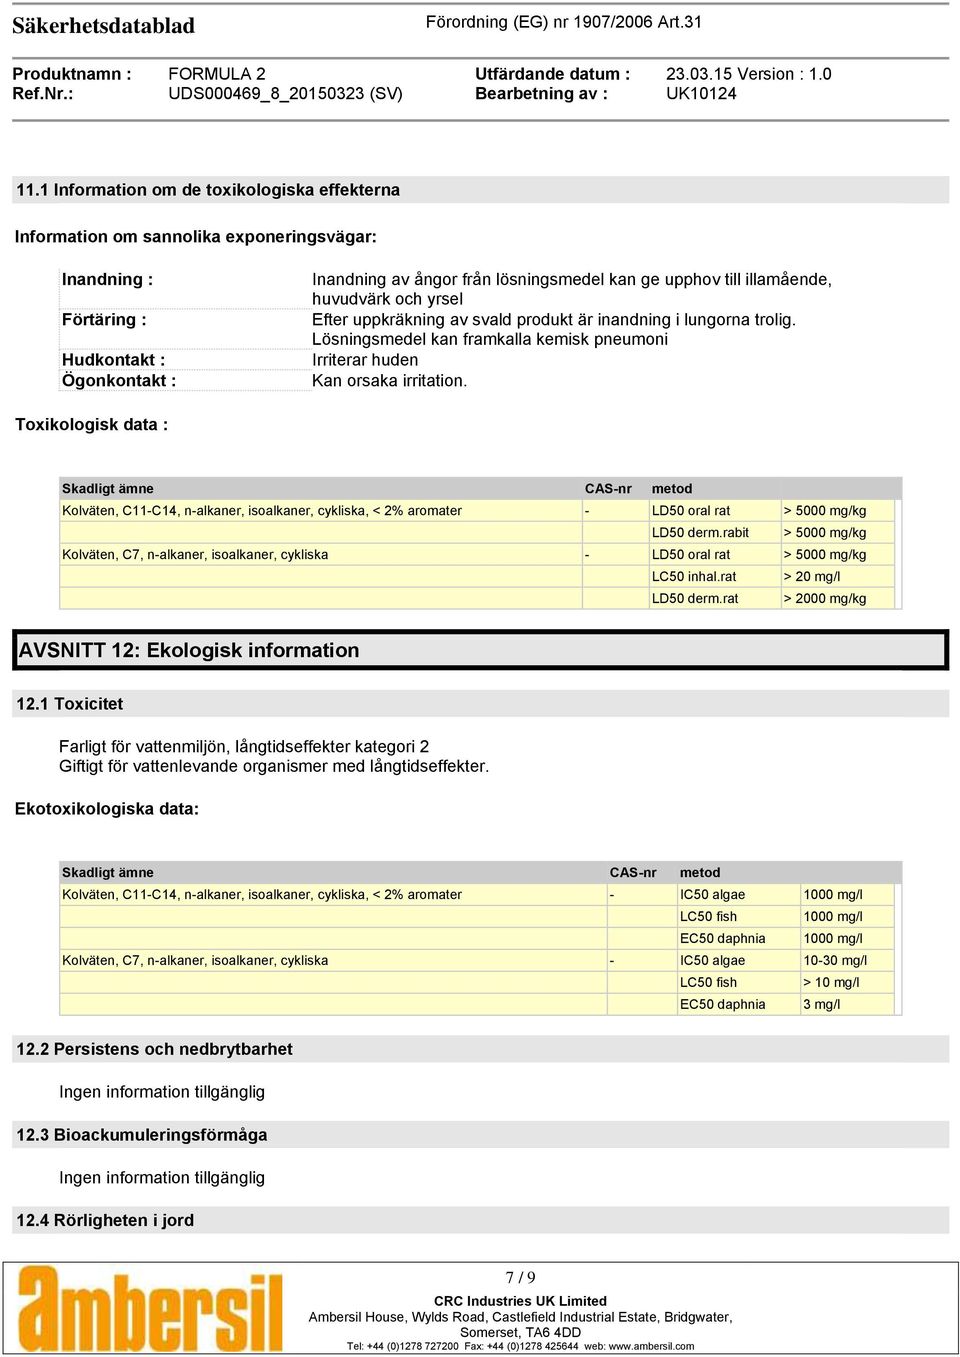 Toxikologisk data : Skadligt ämne CAS-nr metod Kolväten, C11-C14, n-alkaner, isoalkaner, cykliska, < 2% aromater - LD50 oral rat > 5000 mg/kg LD50 derm.